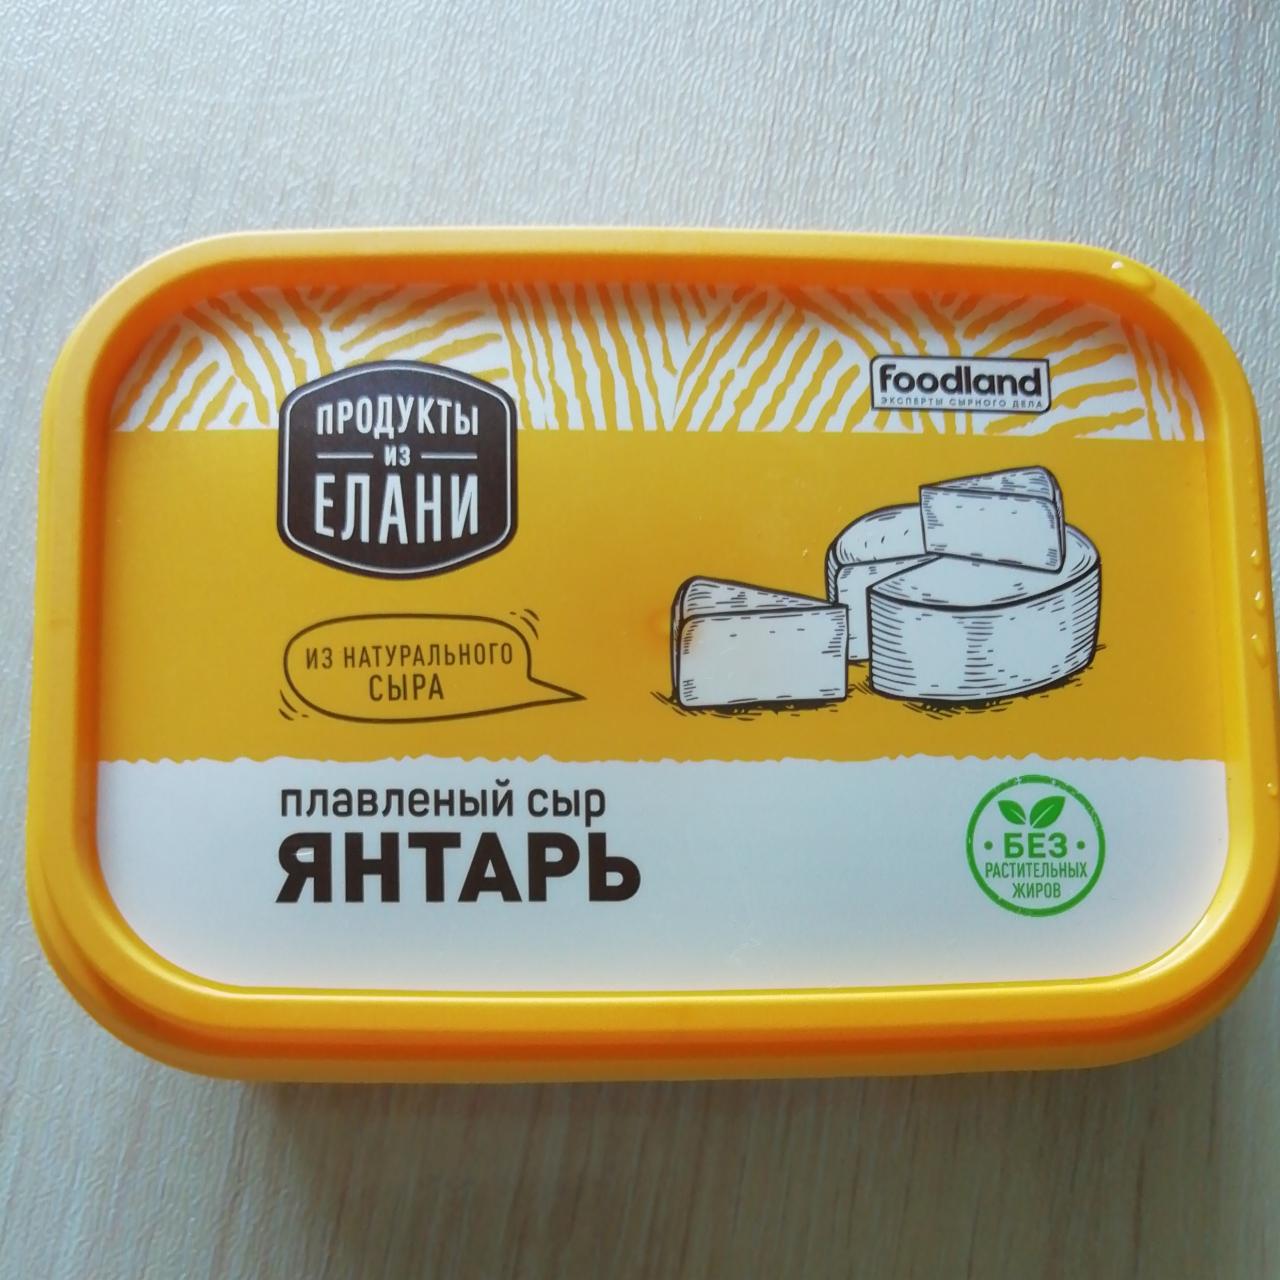 Фото - Плавленый сыр Янтарь Продукты из Елани